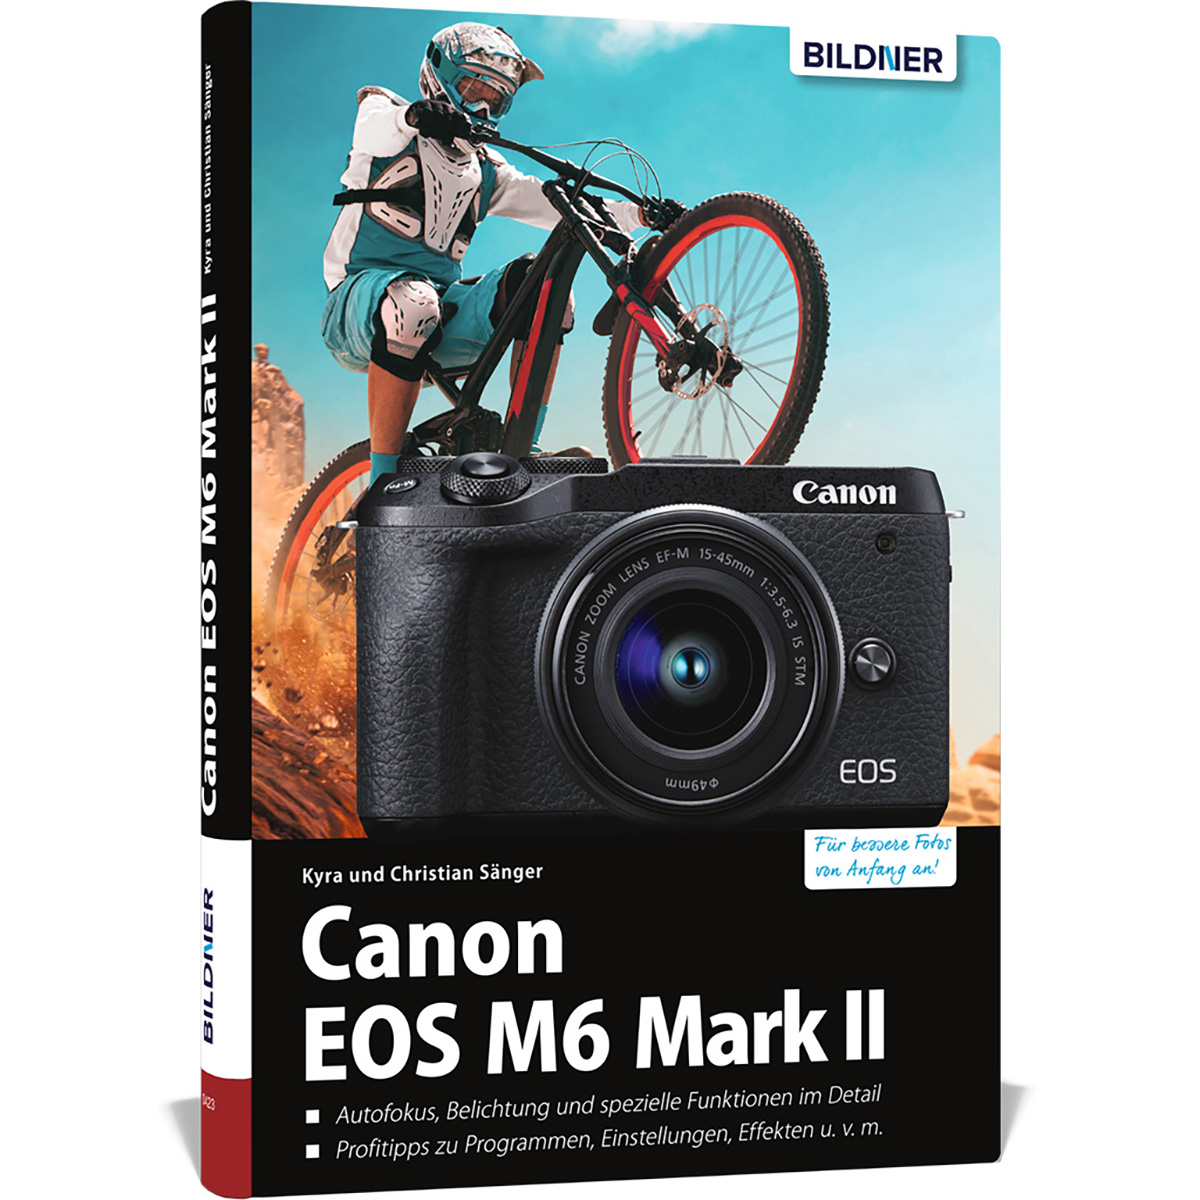 Canon EOS M6 Mark 2 - Kamera! Das Ihrer Praxisbuch zu umfangreiche